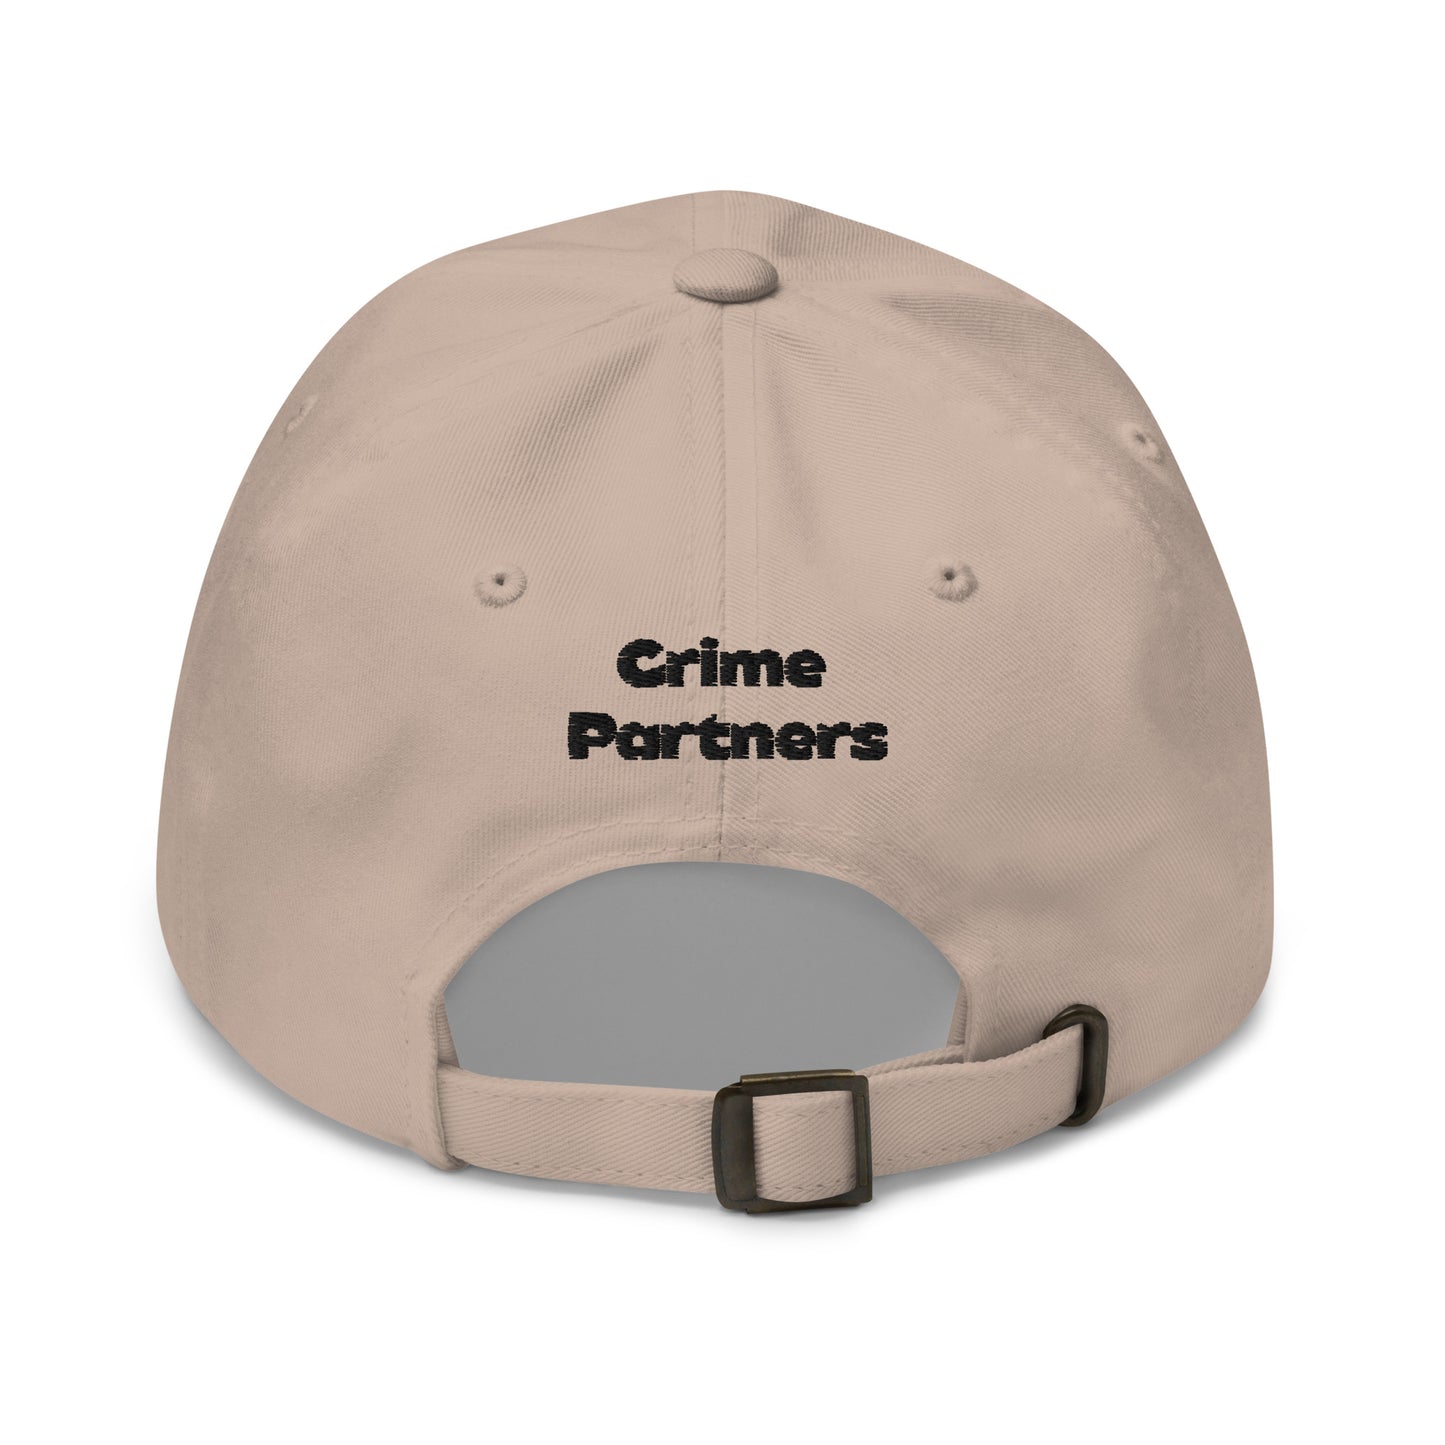 Ninjas - Partners in Crime - Dad hat